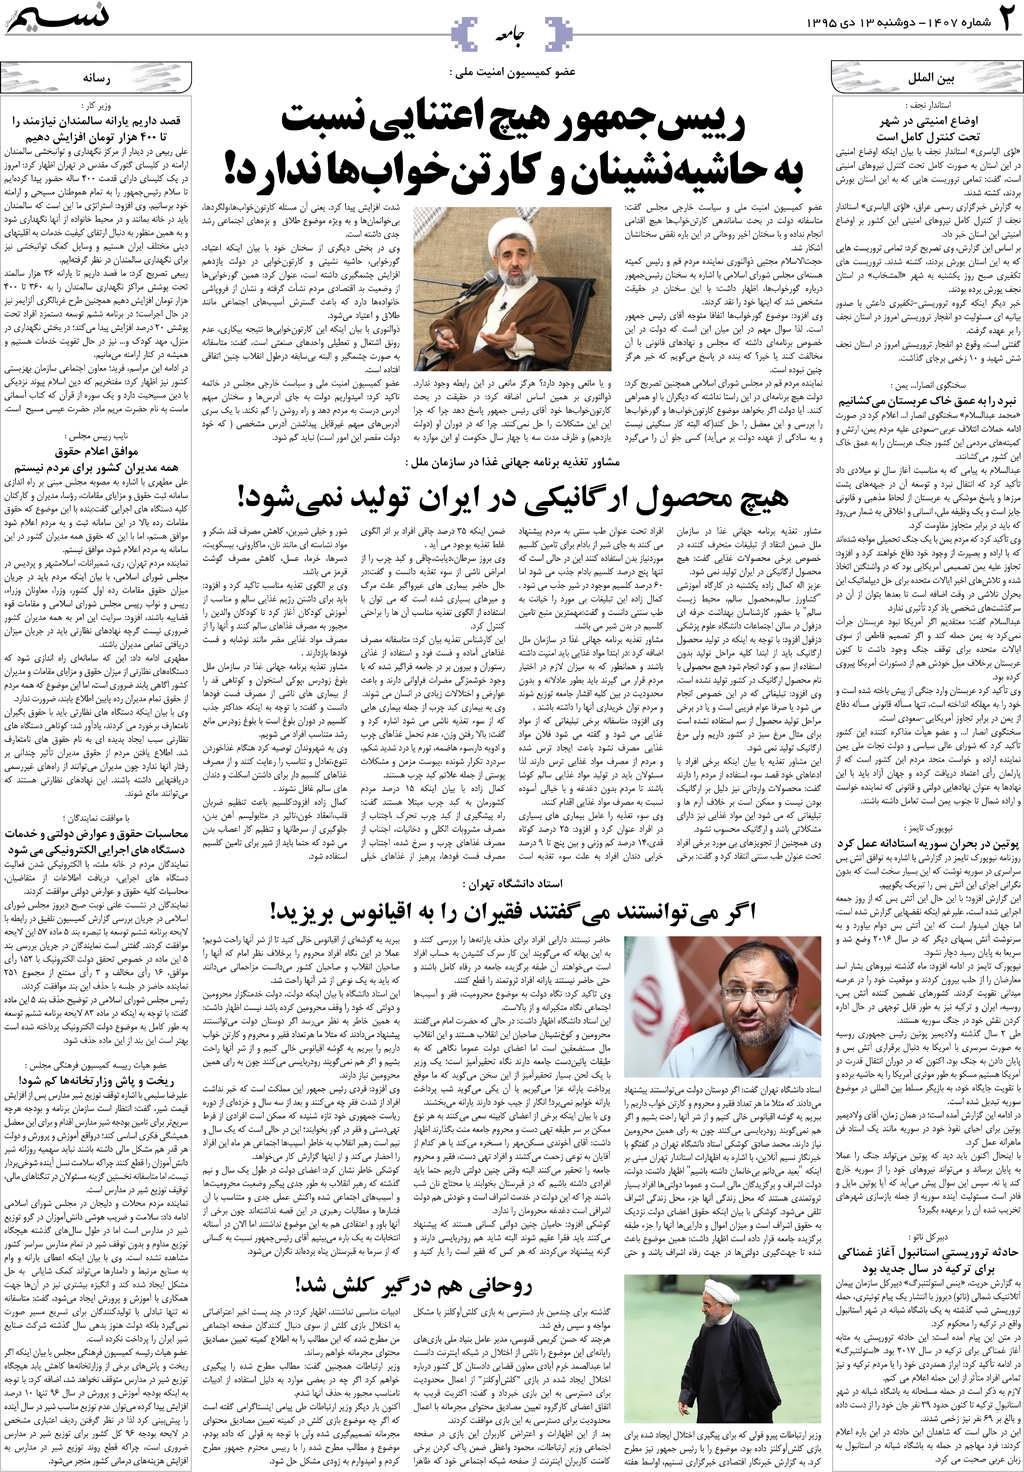 صفحه جامعه روزنامه نسیم شماره 1407